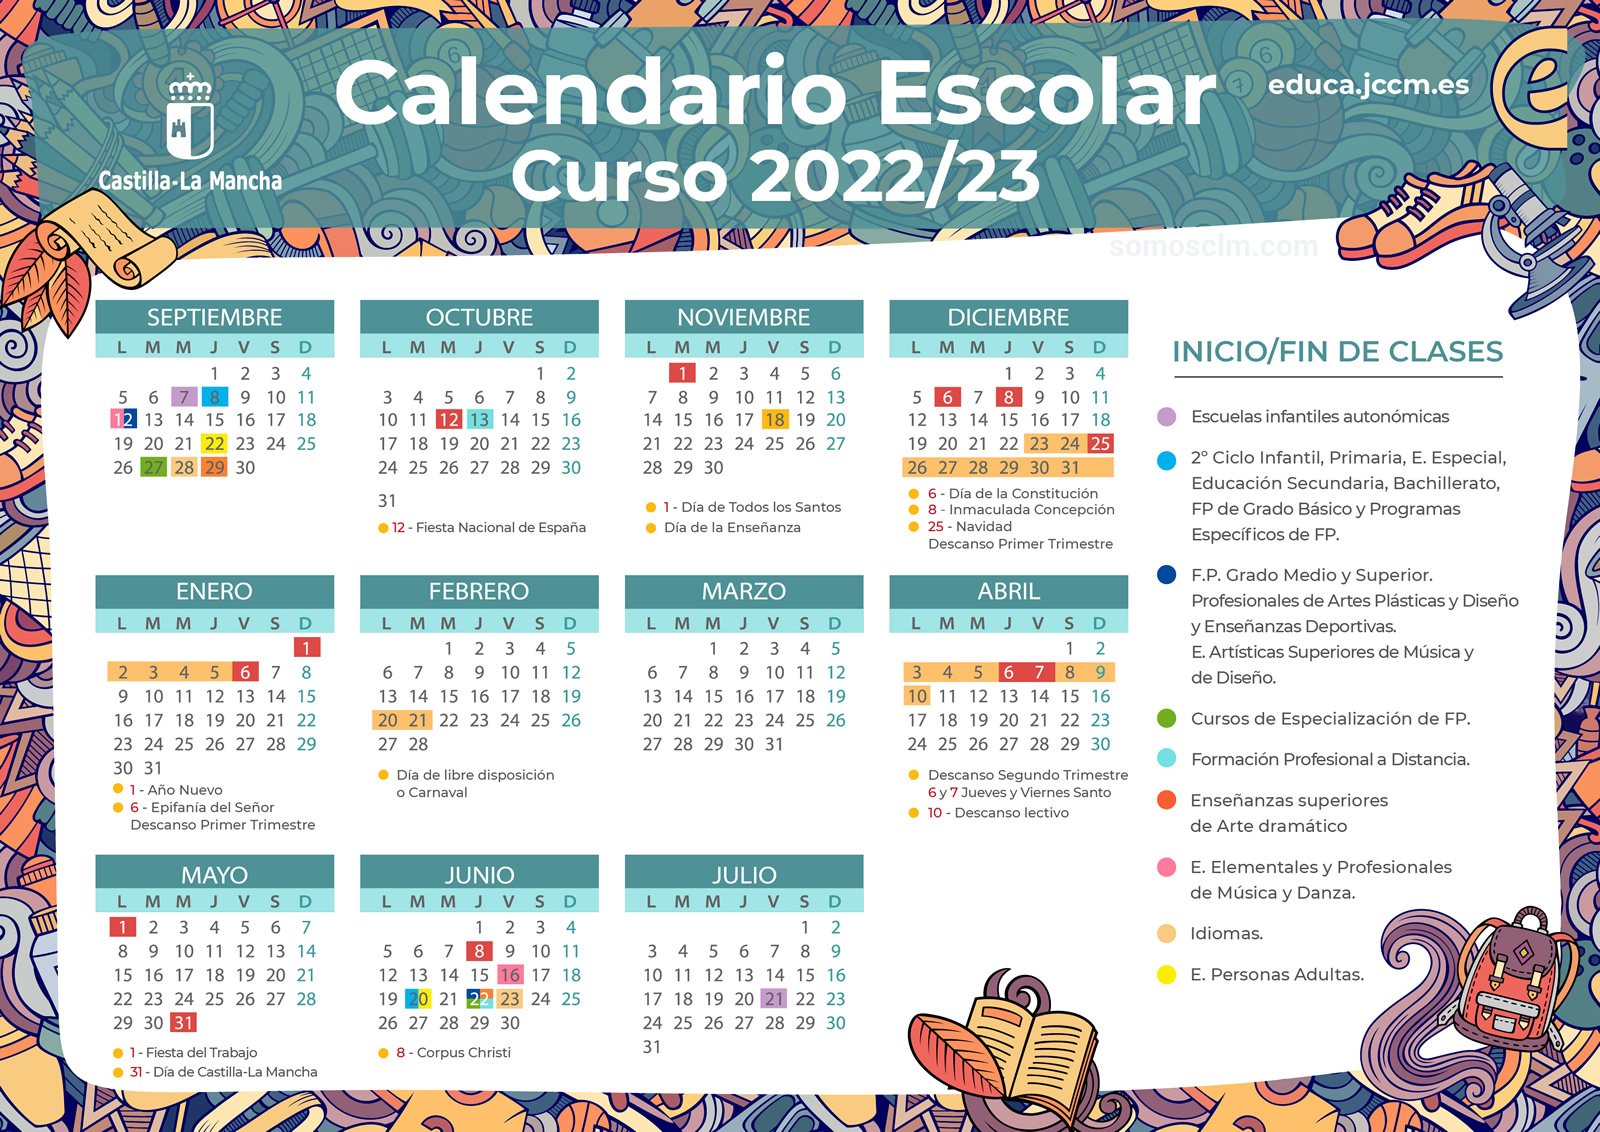 Este es el calendario escolar en Castilla-La Mancha para el curso 2022/2023